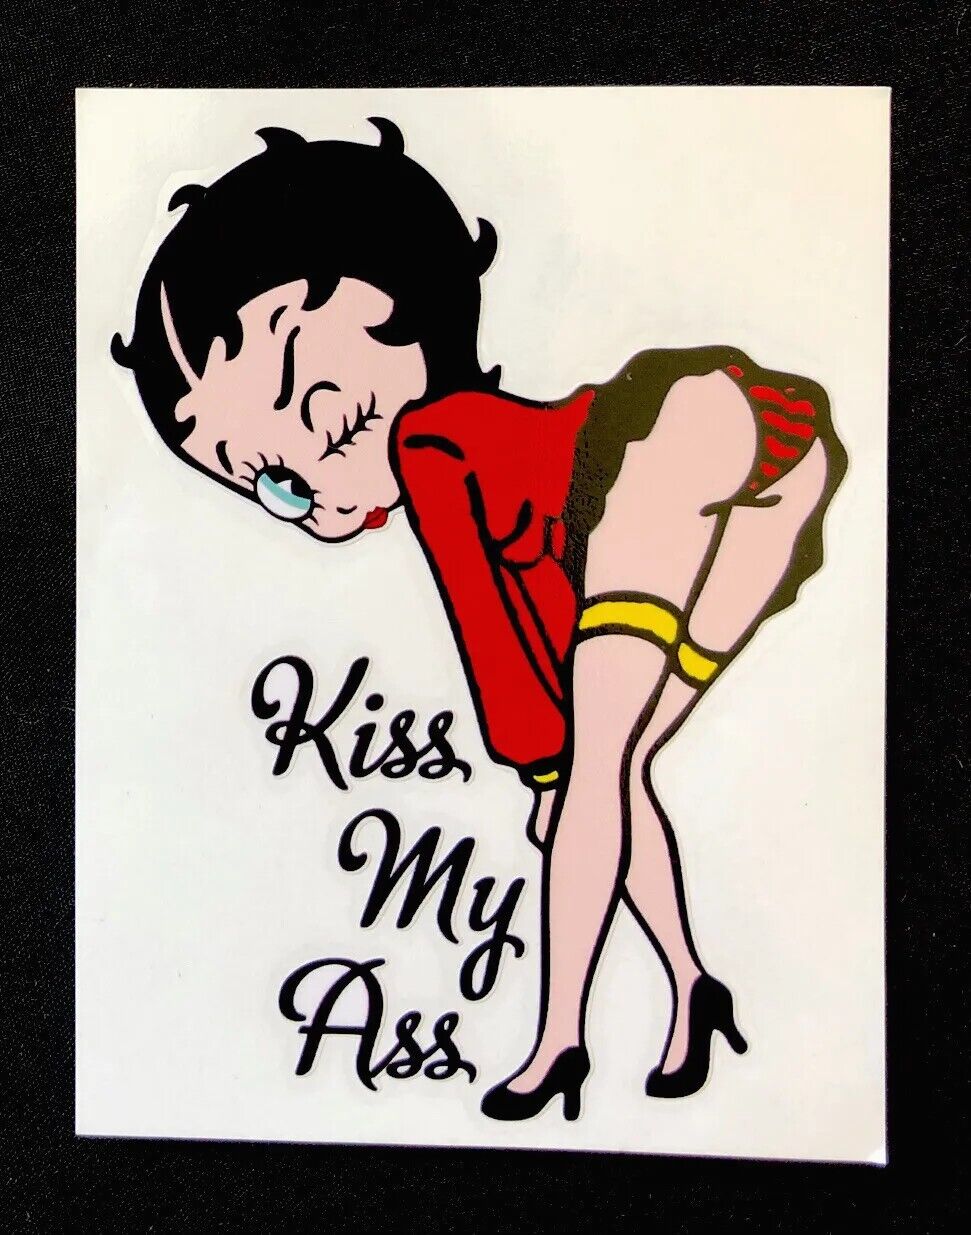 BETTY BOOP STICKER “KISS MY ASS” 3 3/4”￼ 5 1/4” SUPER HOT SEXY BETTY BOOP